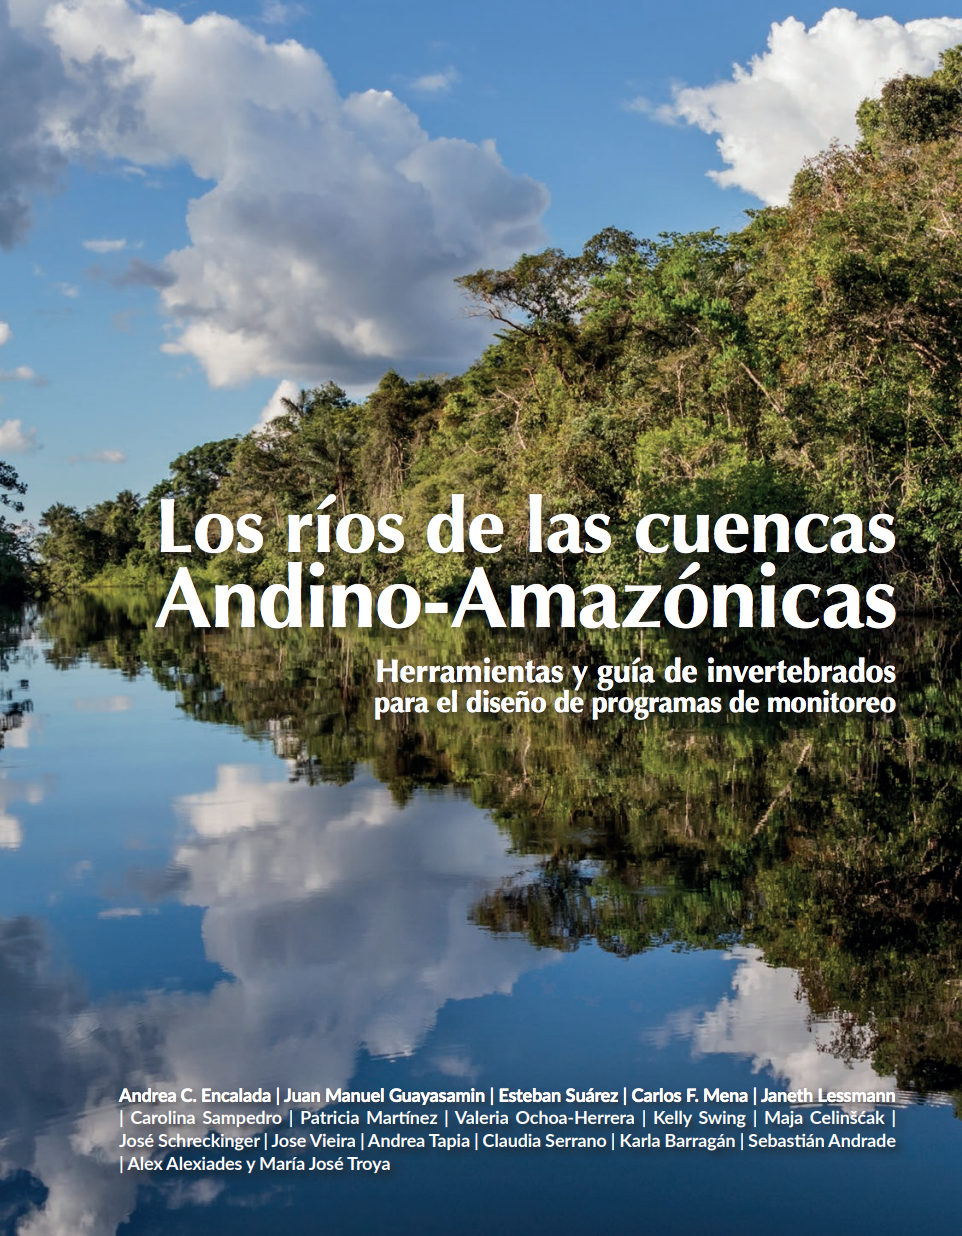 Los ríos de las cuencas Andino-Amazónicas: herramientas y guía de invertebrados para el diseño de programas de monitoreo